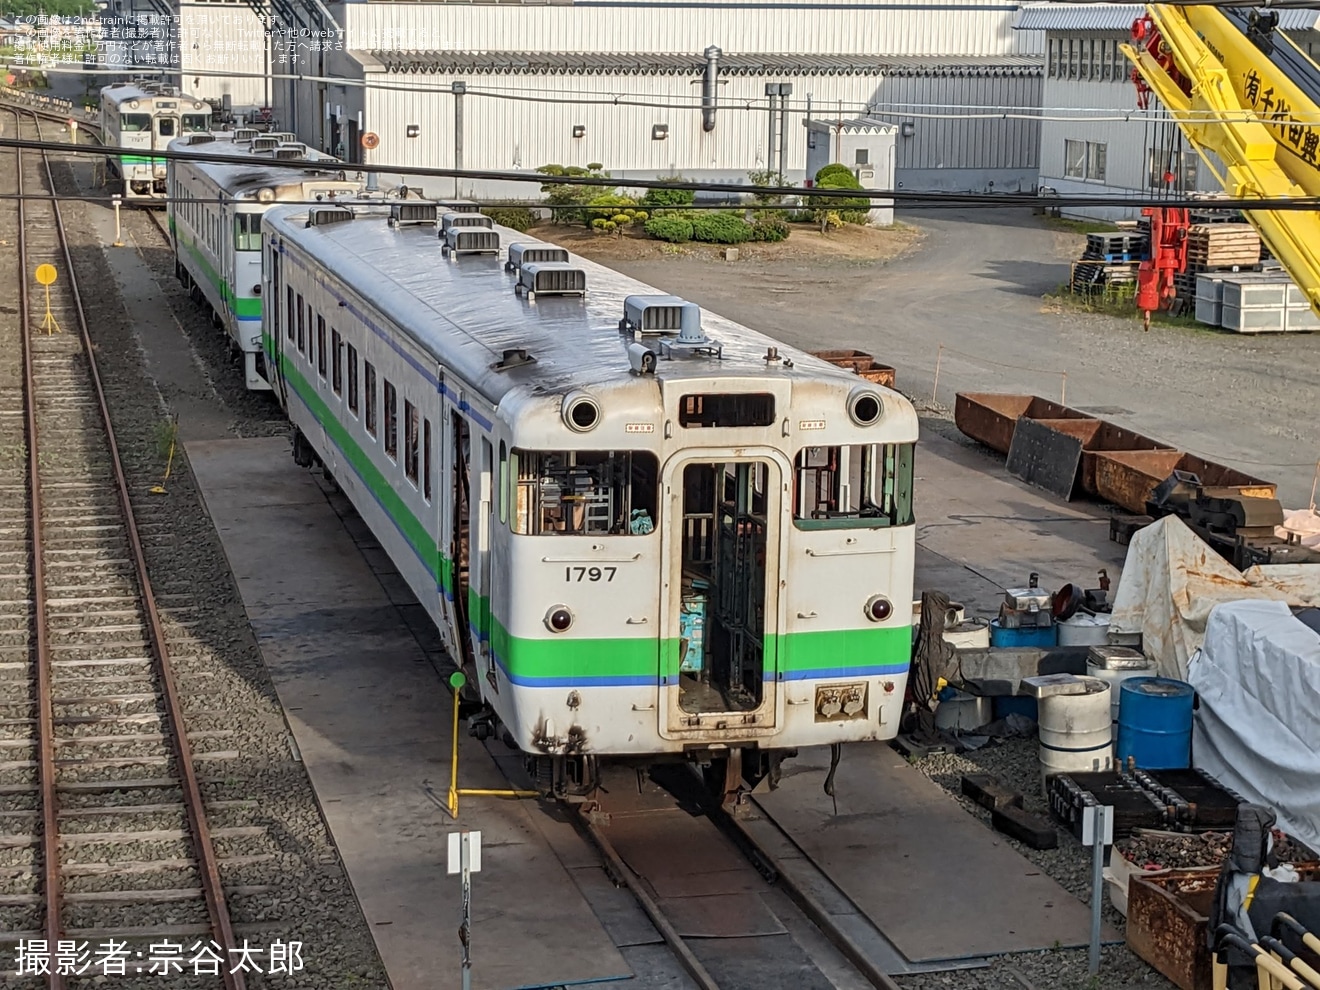 【JR北】キハ40-1797が釧路運輸車両所で解体作業中の拡大写真